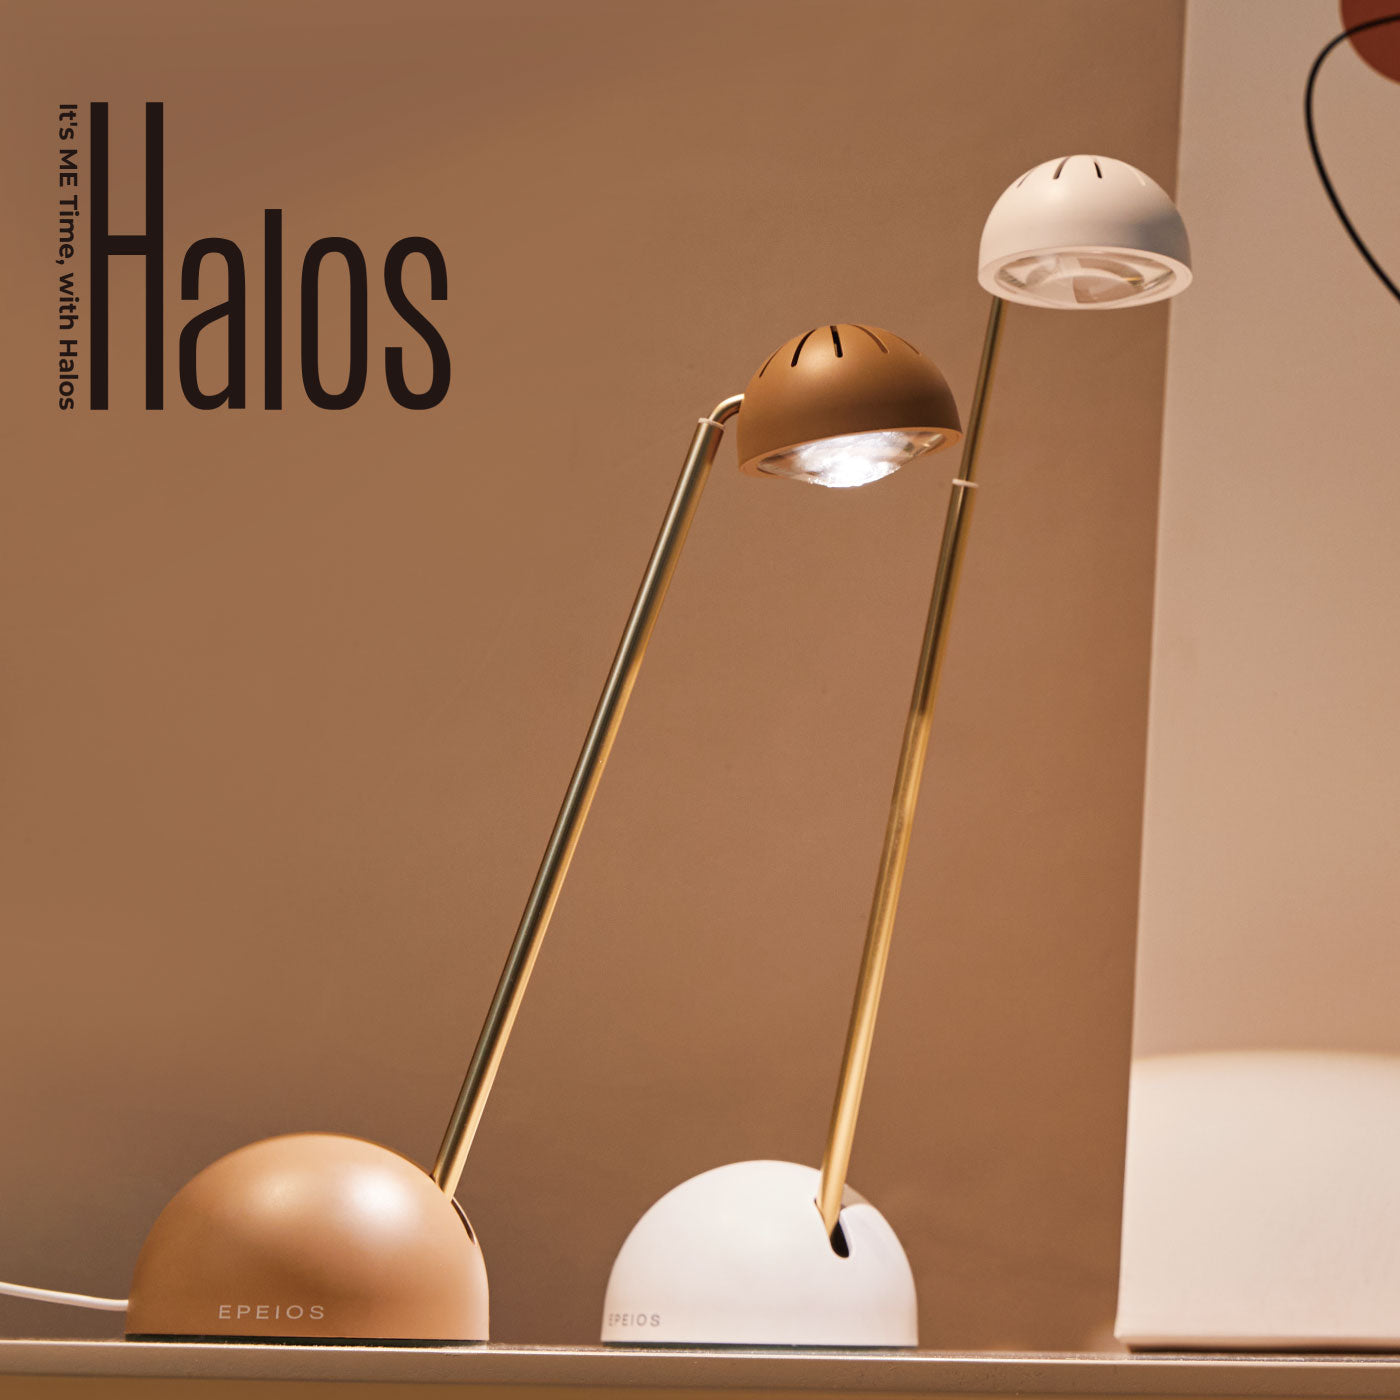 EPEIOS Lamp|Halos LED テーブルランプ マーブルホワイト